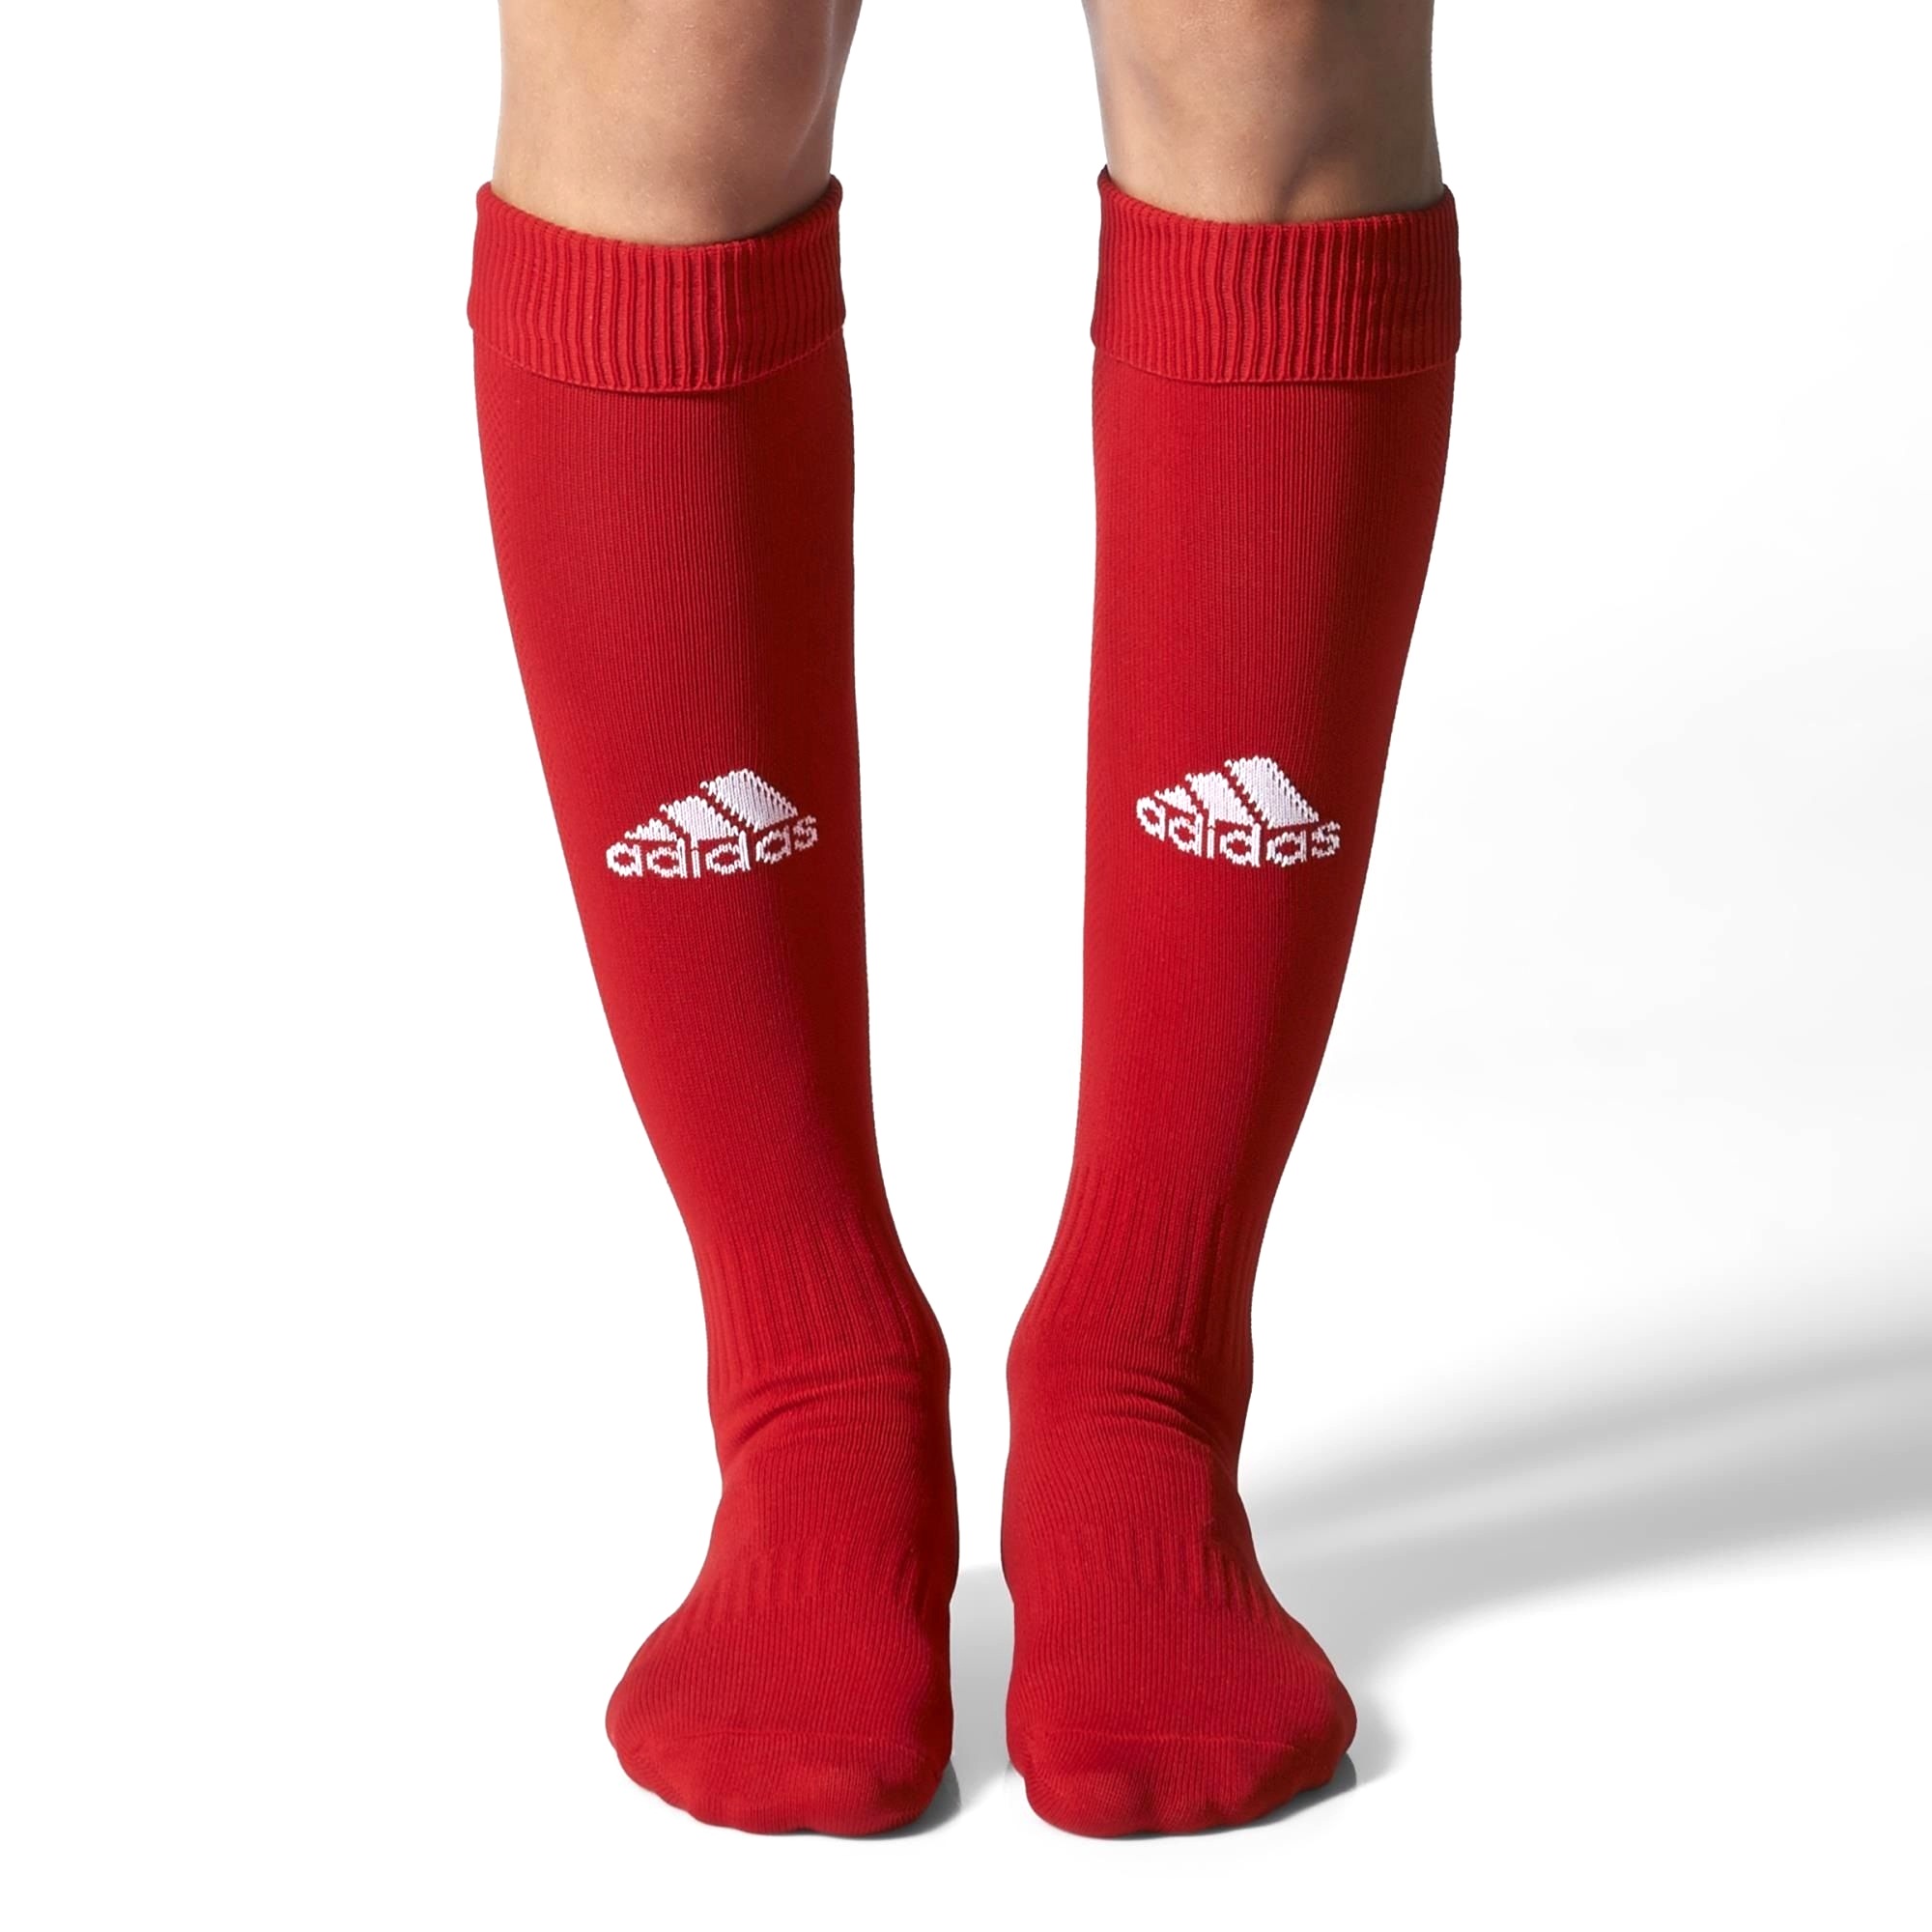 Men's Adidas Socks - Milano Team 